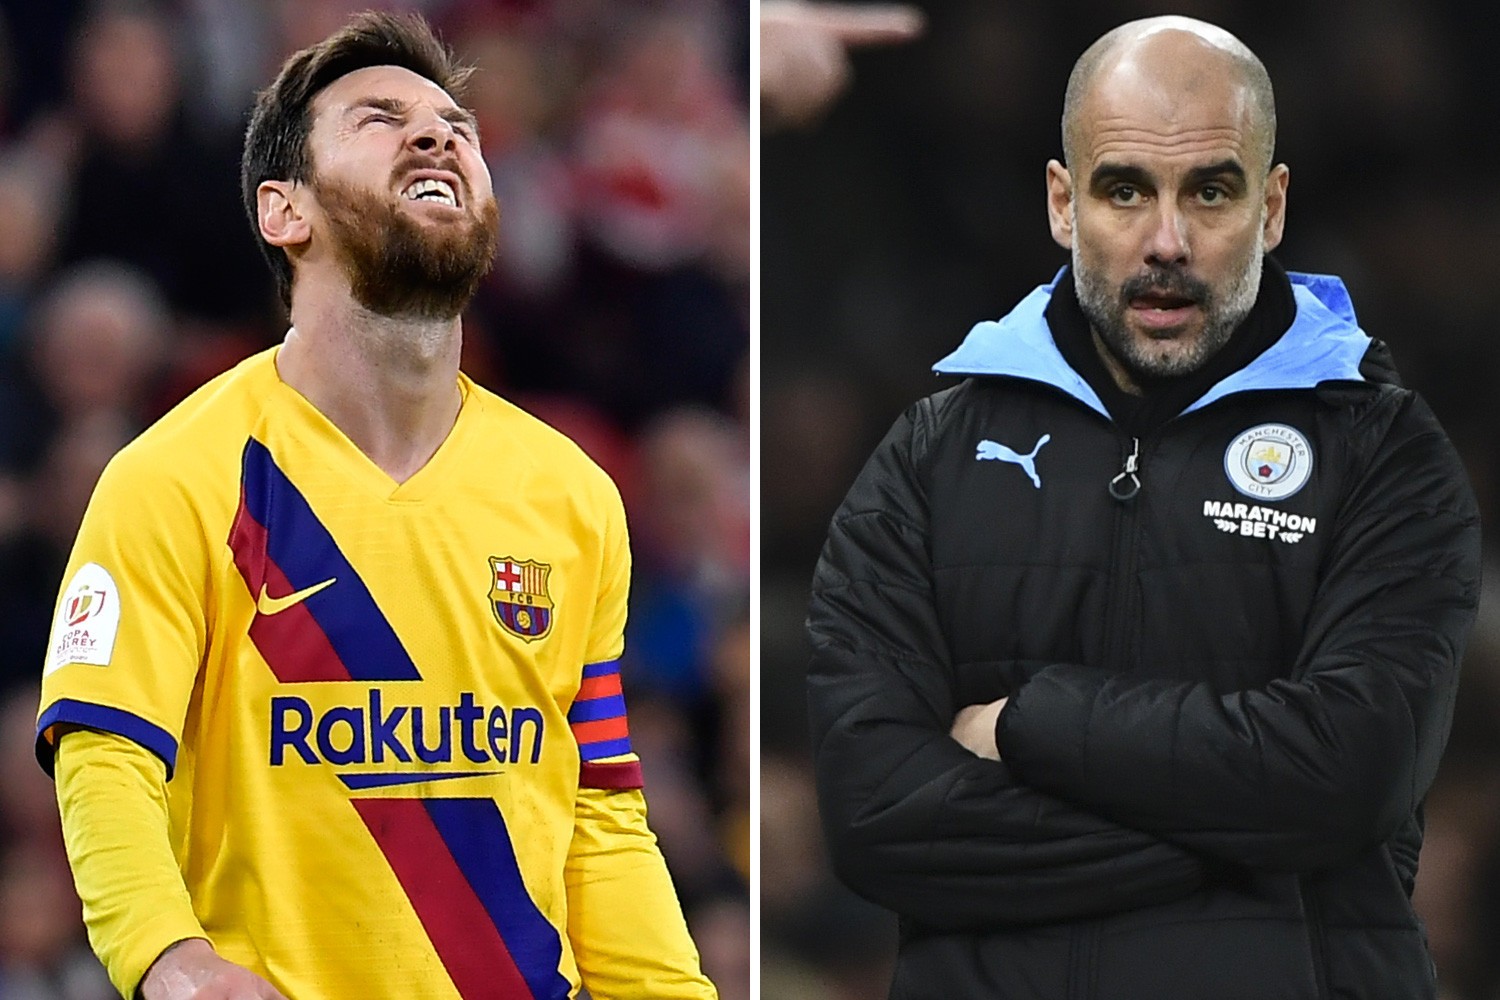 Messi à Man City en 2021 ? Pep Guardiola réagit sans ambages